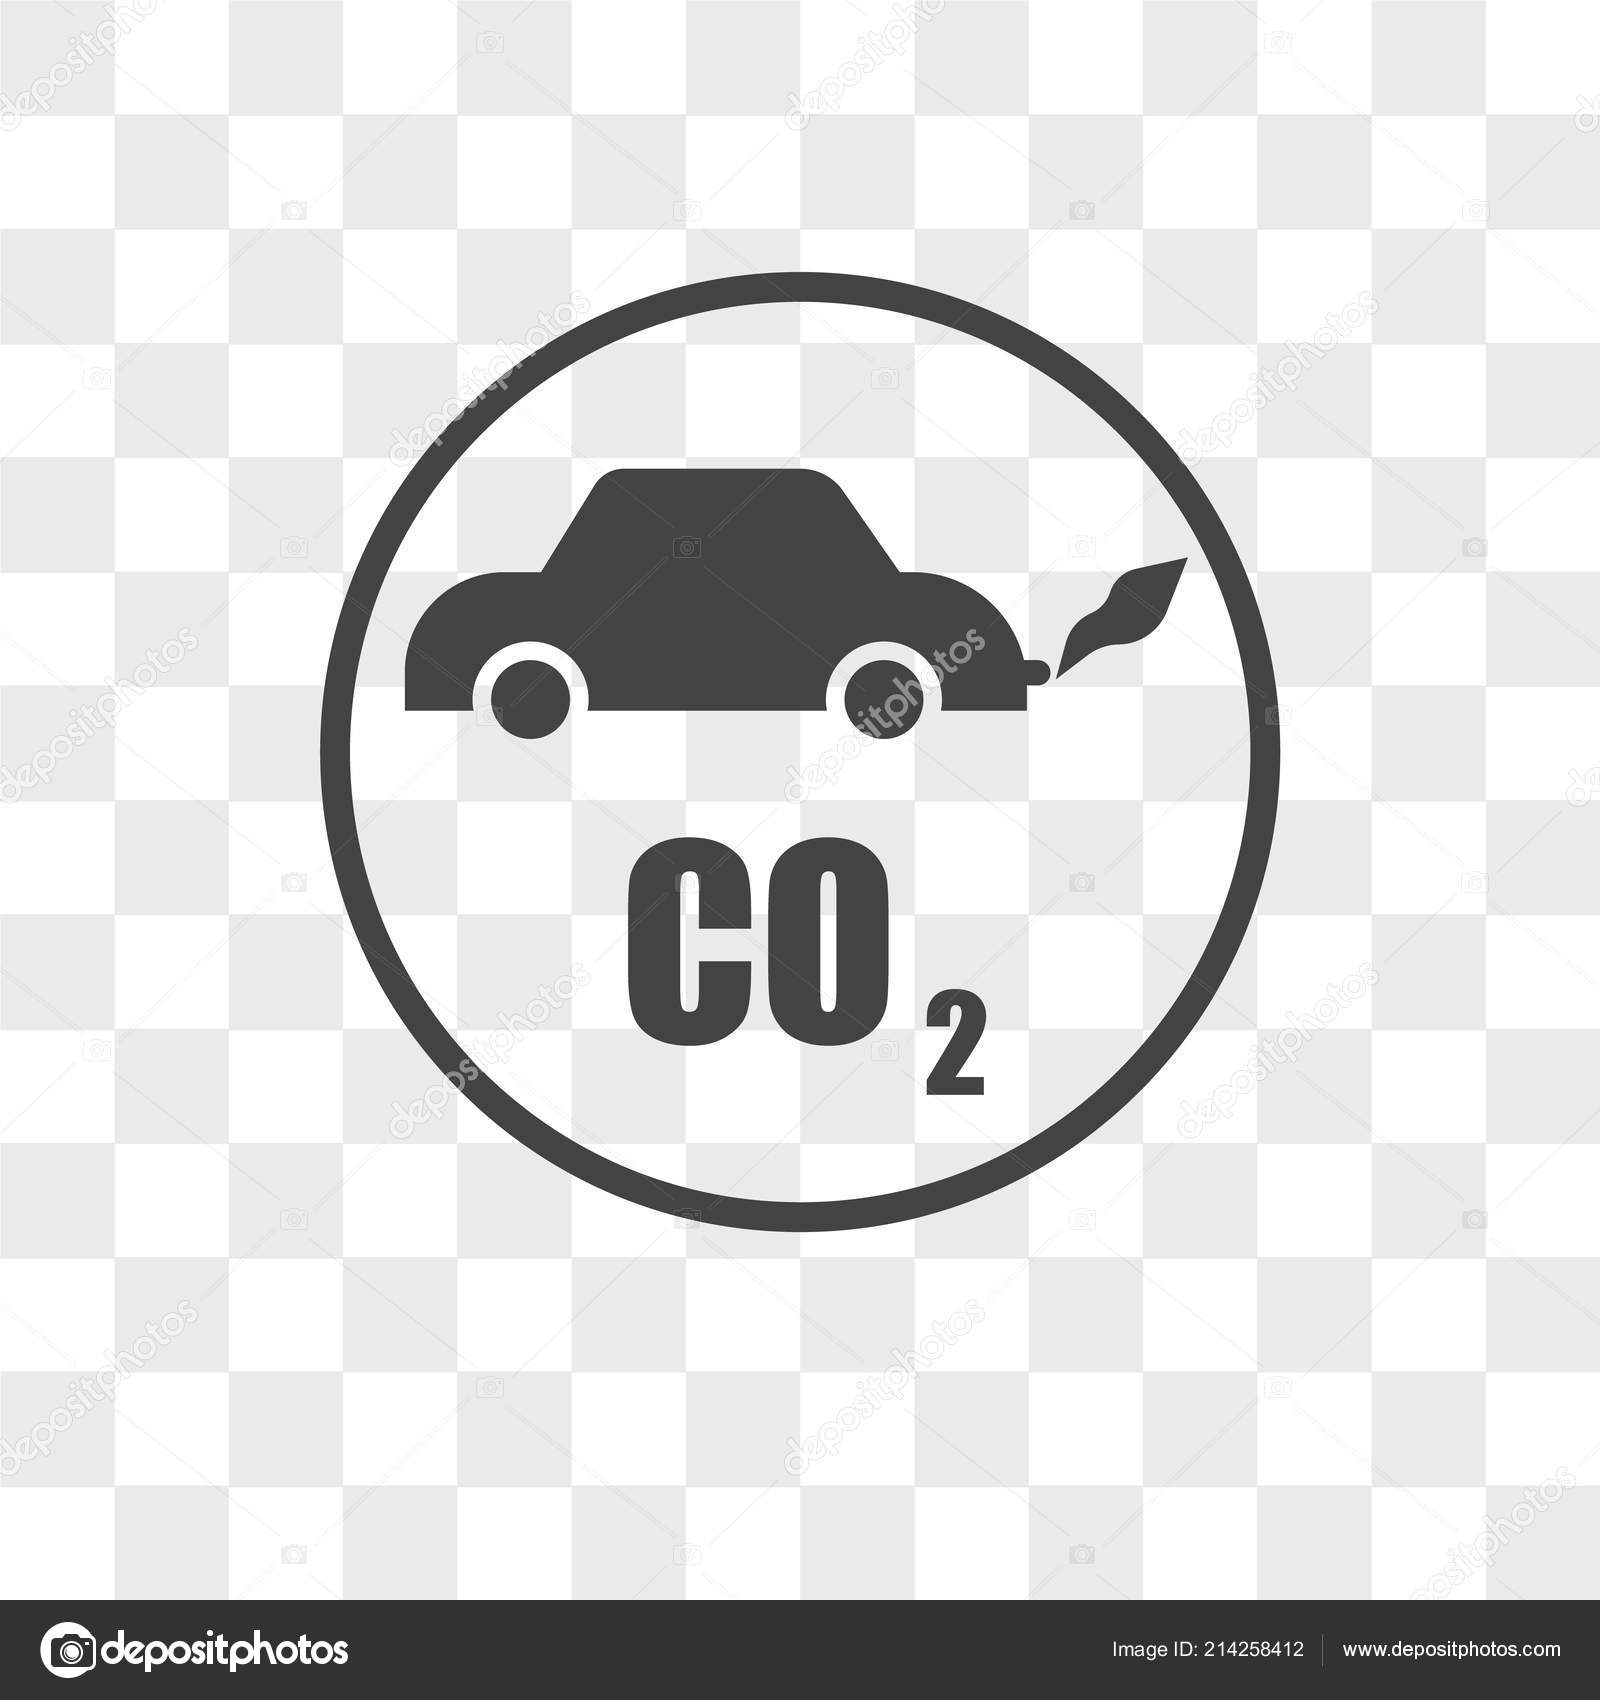 Co2 emissions: Hãy xem hình ảnh này để hiểu rõ hơn về khí thải carbon và tác động của chúng đến môi trường. Hãy thực hiện những thay đổi nhỏ để giảm thiểu khí thải carbon và bảo vệ hành tinh của chúng ta.